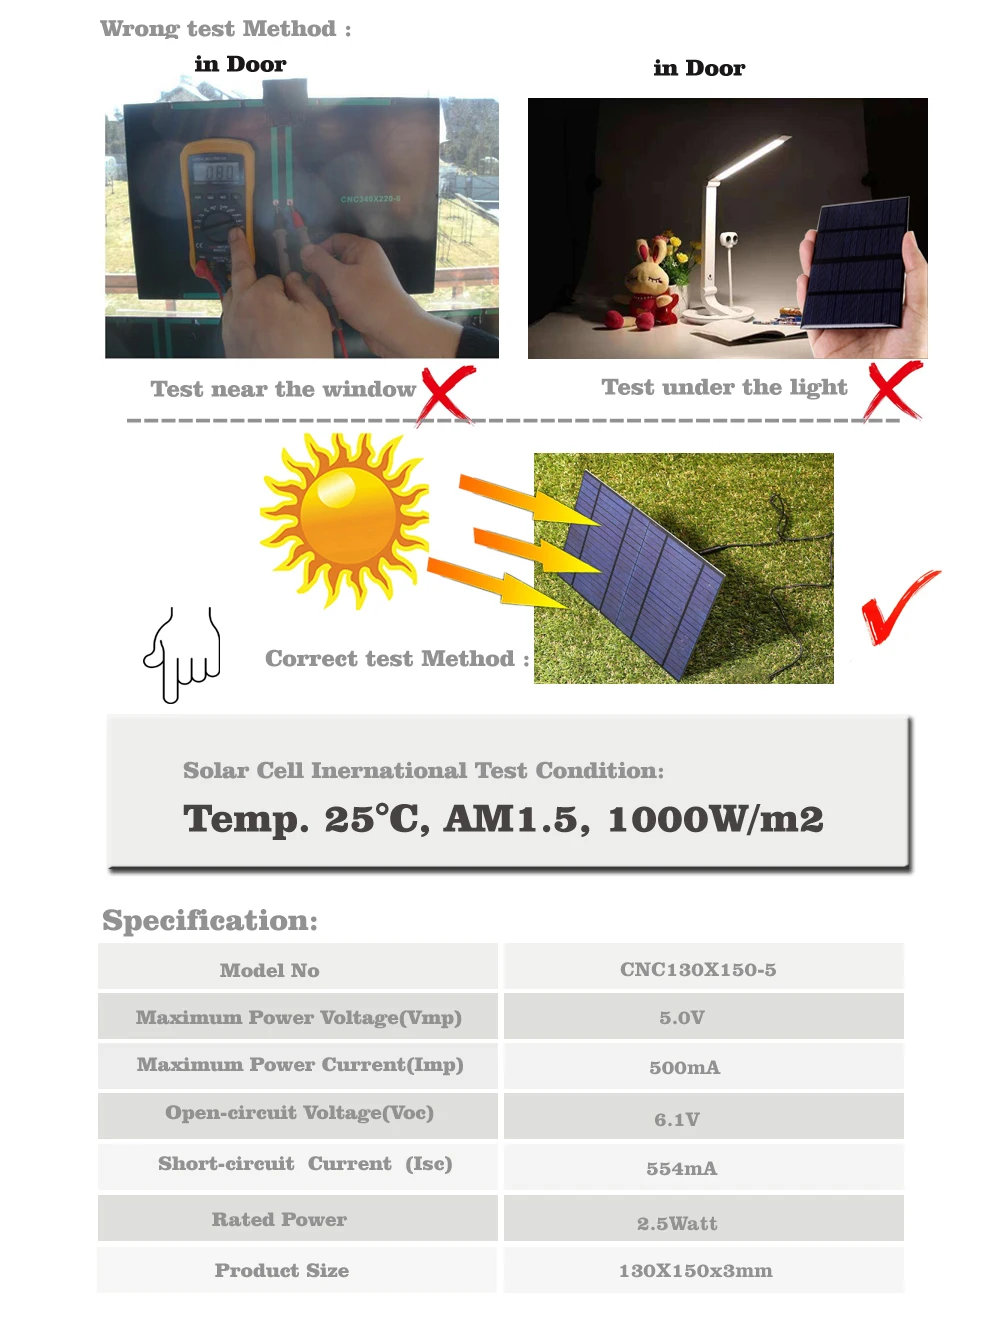 5V 500mA 2,5 Вт 2,5 Панели солнечные Стандартный эпоксидный поликристаллический кремний DIY батарея заряд энергии Модуль Мини Солнечная батарея игрушка